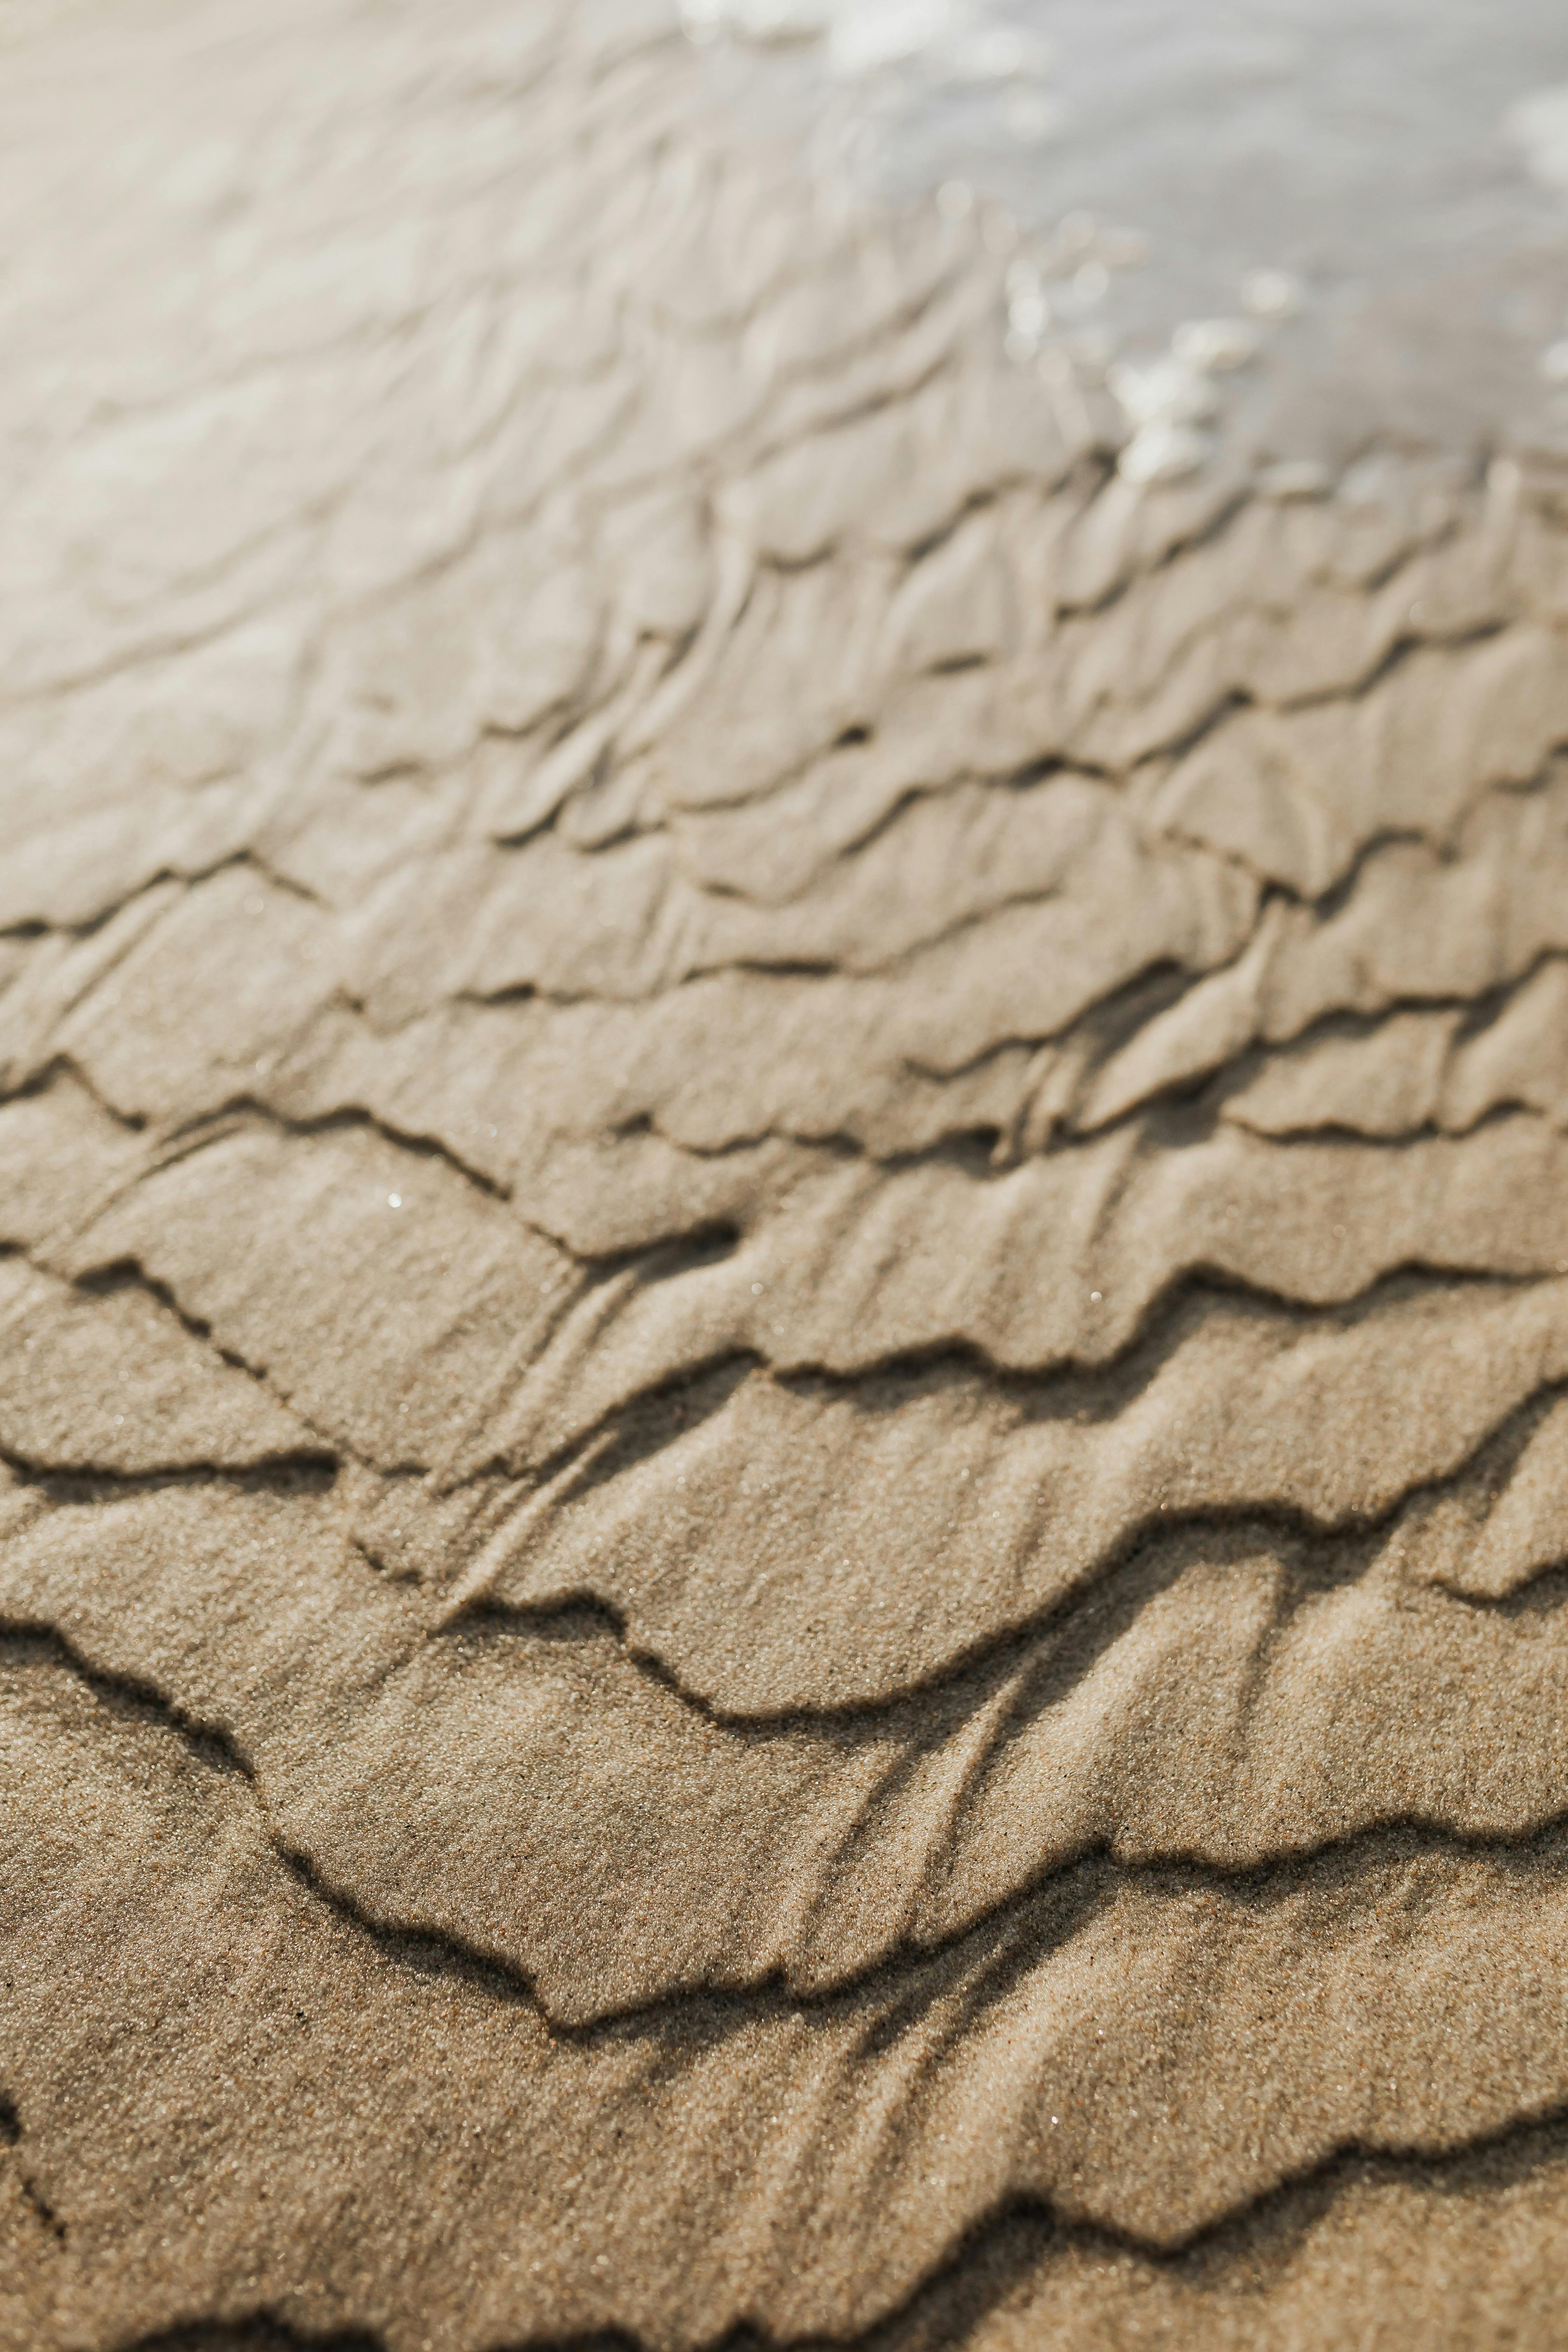 wet beach sand texture